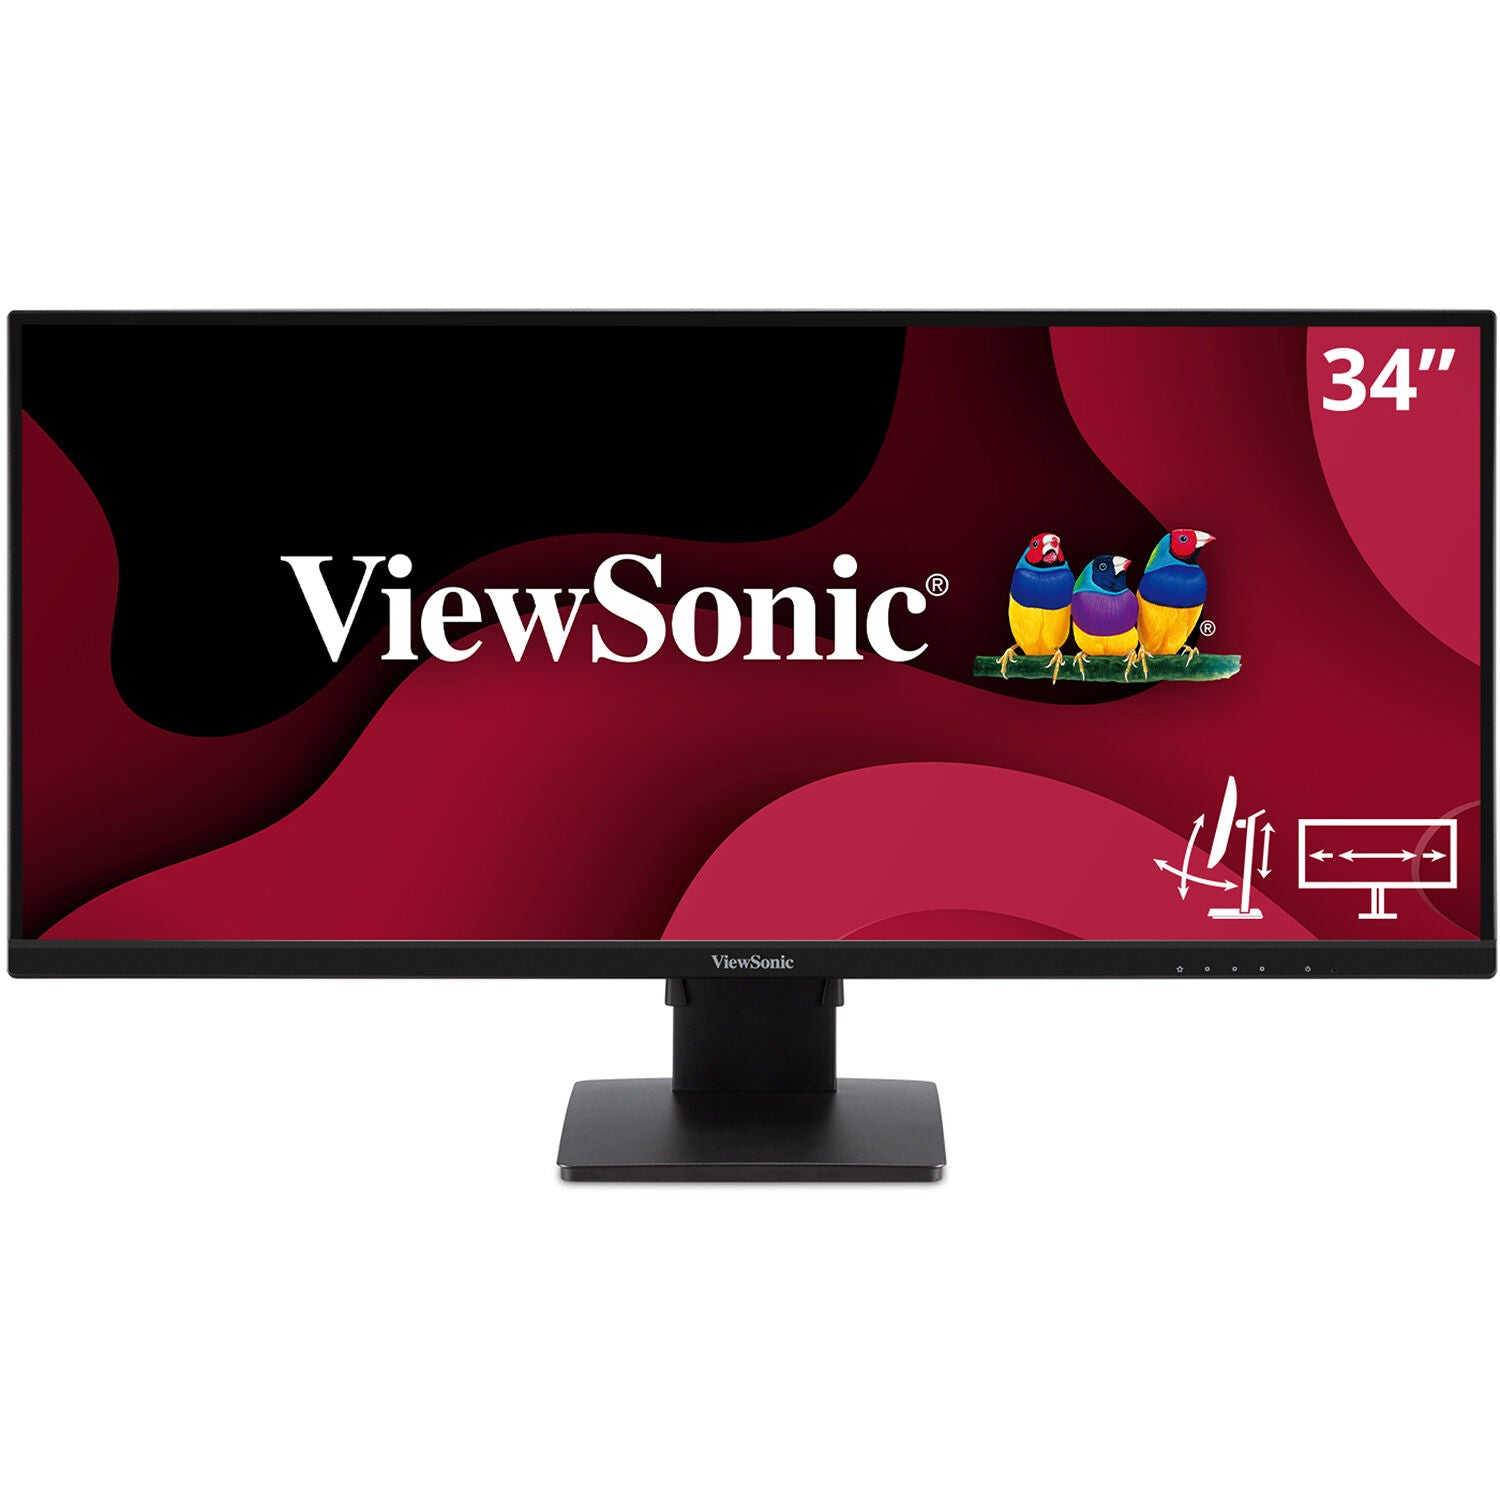 ViewSonic VA3456-MHDJ-R 34" 21:9 UltraWide WQHD 1440p IPS Monitor - C Grade Refurbished